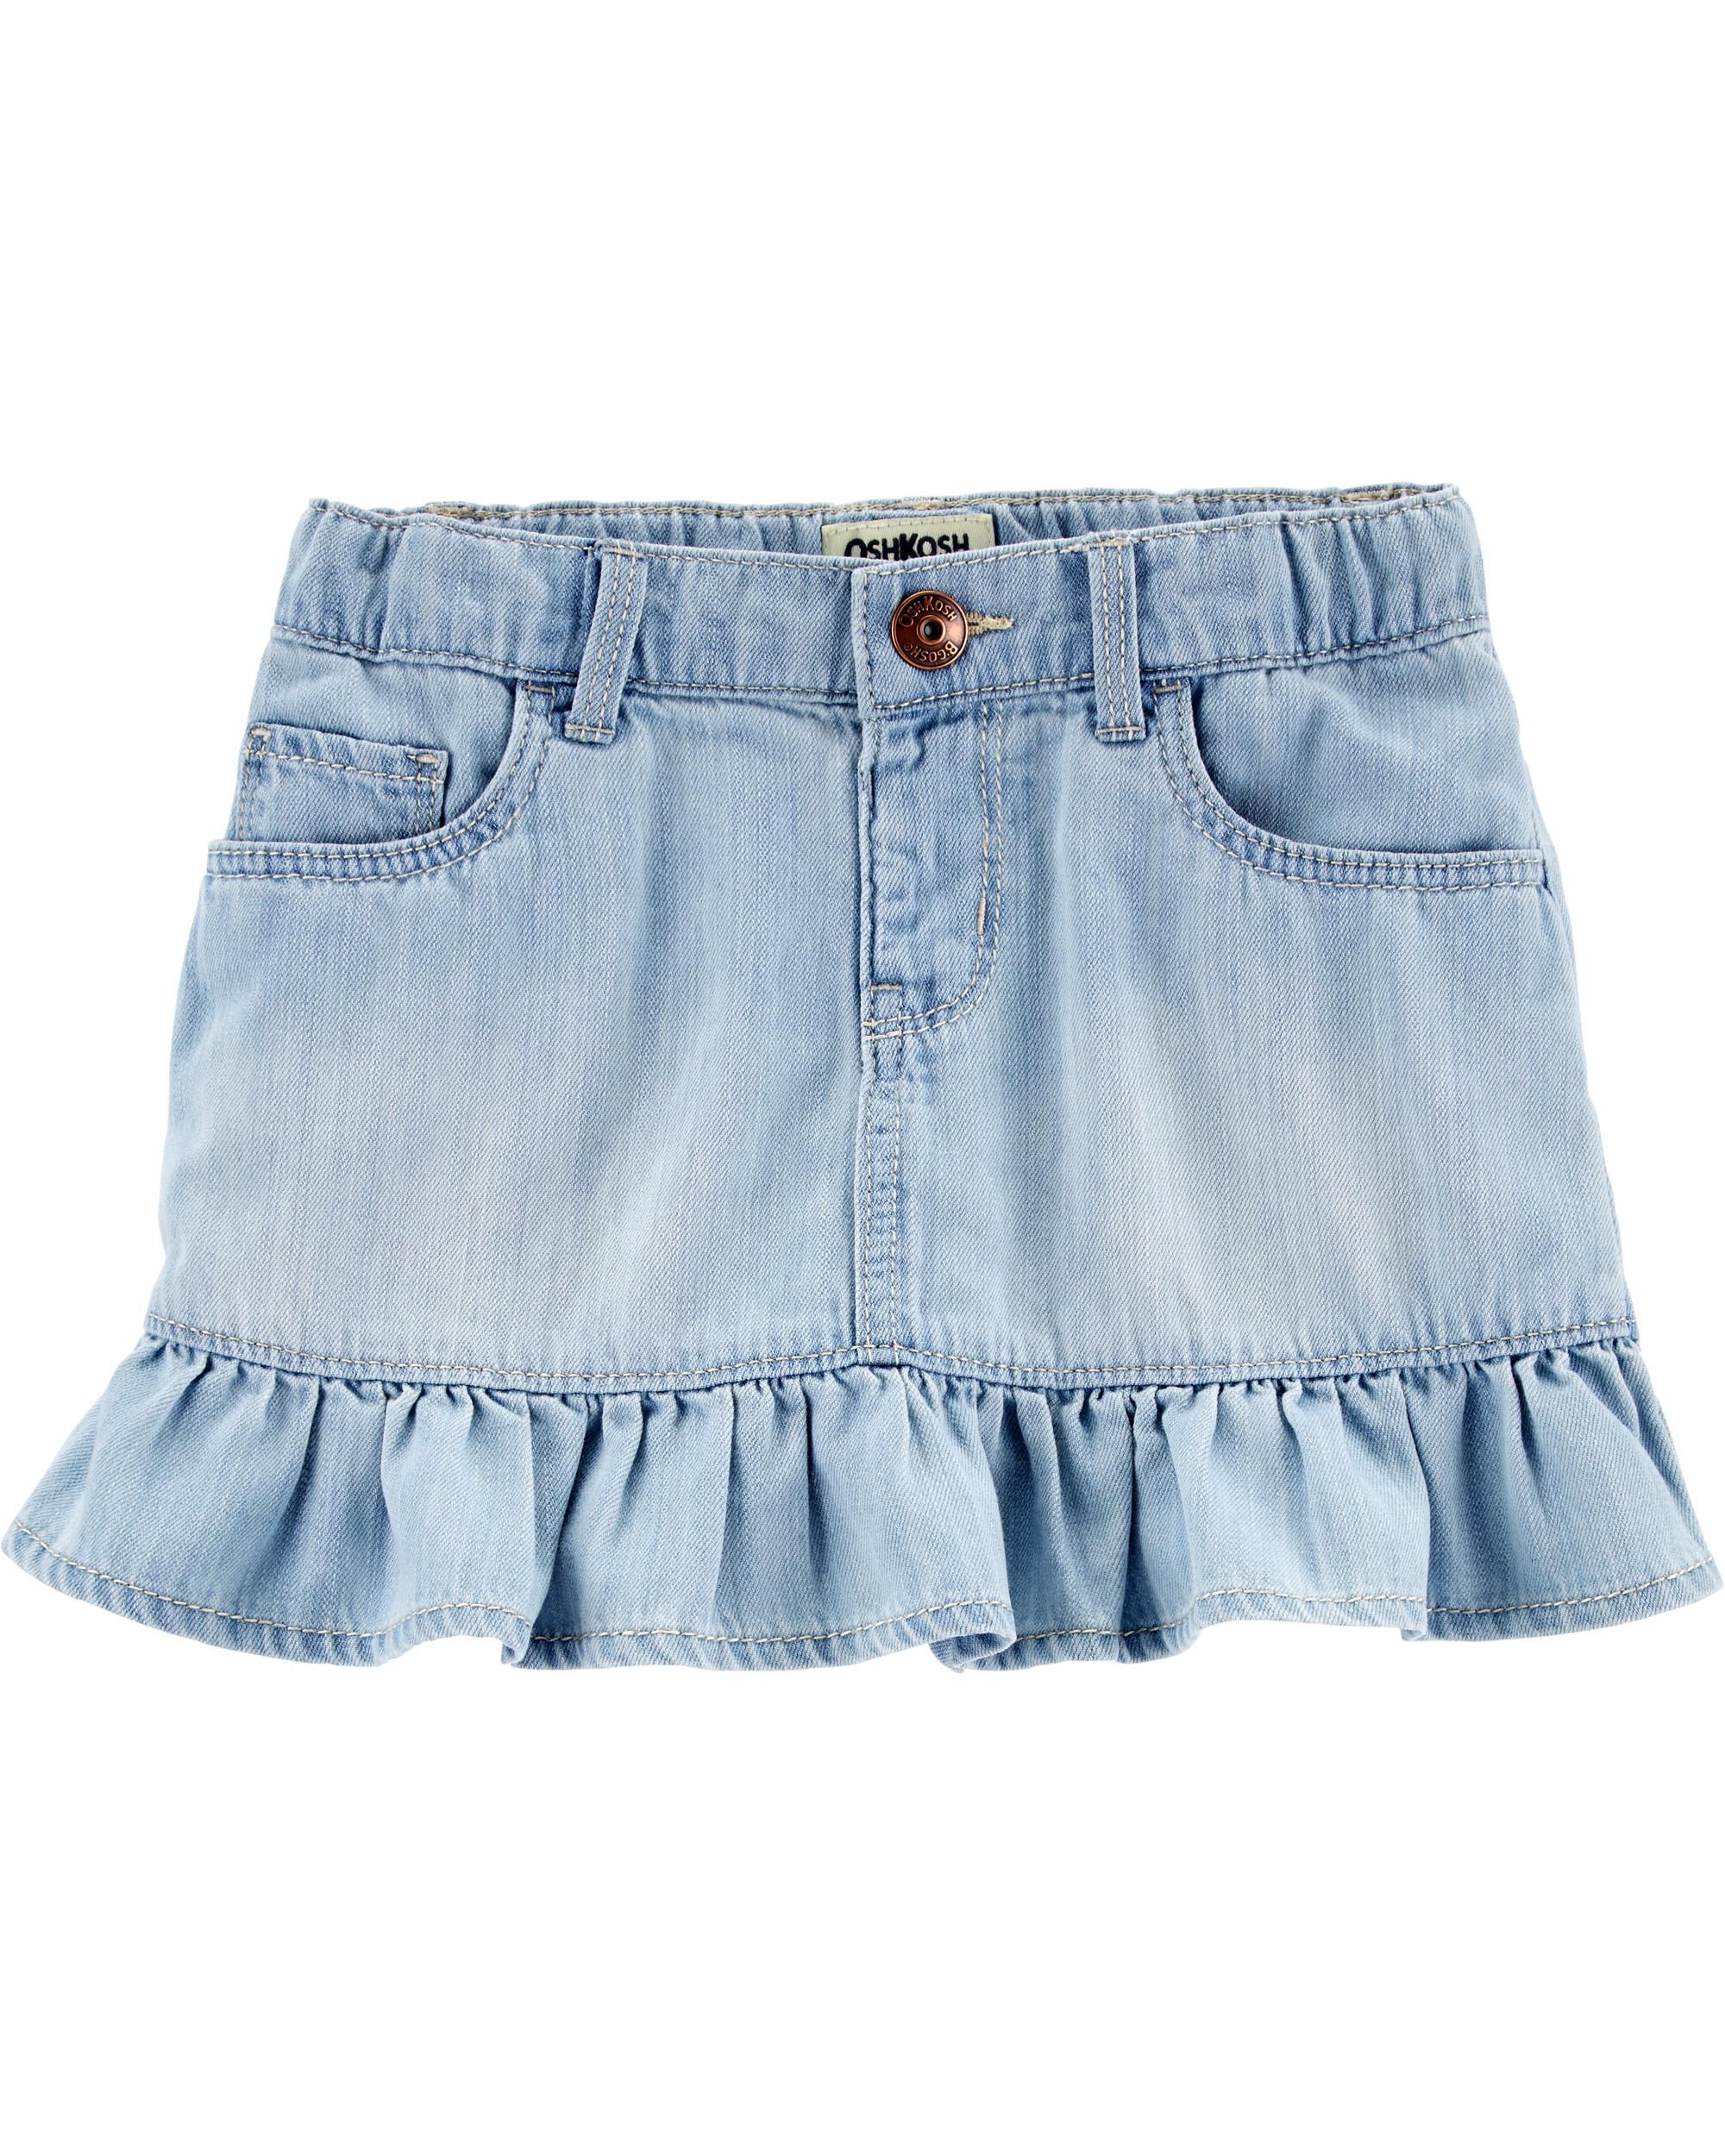 baby girl blue jean skirt